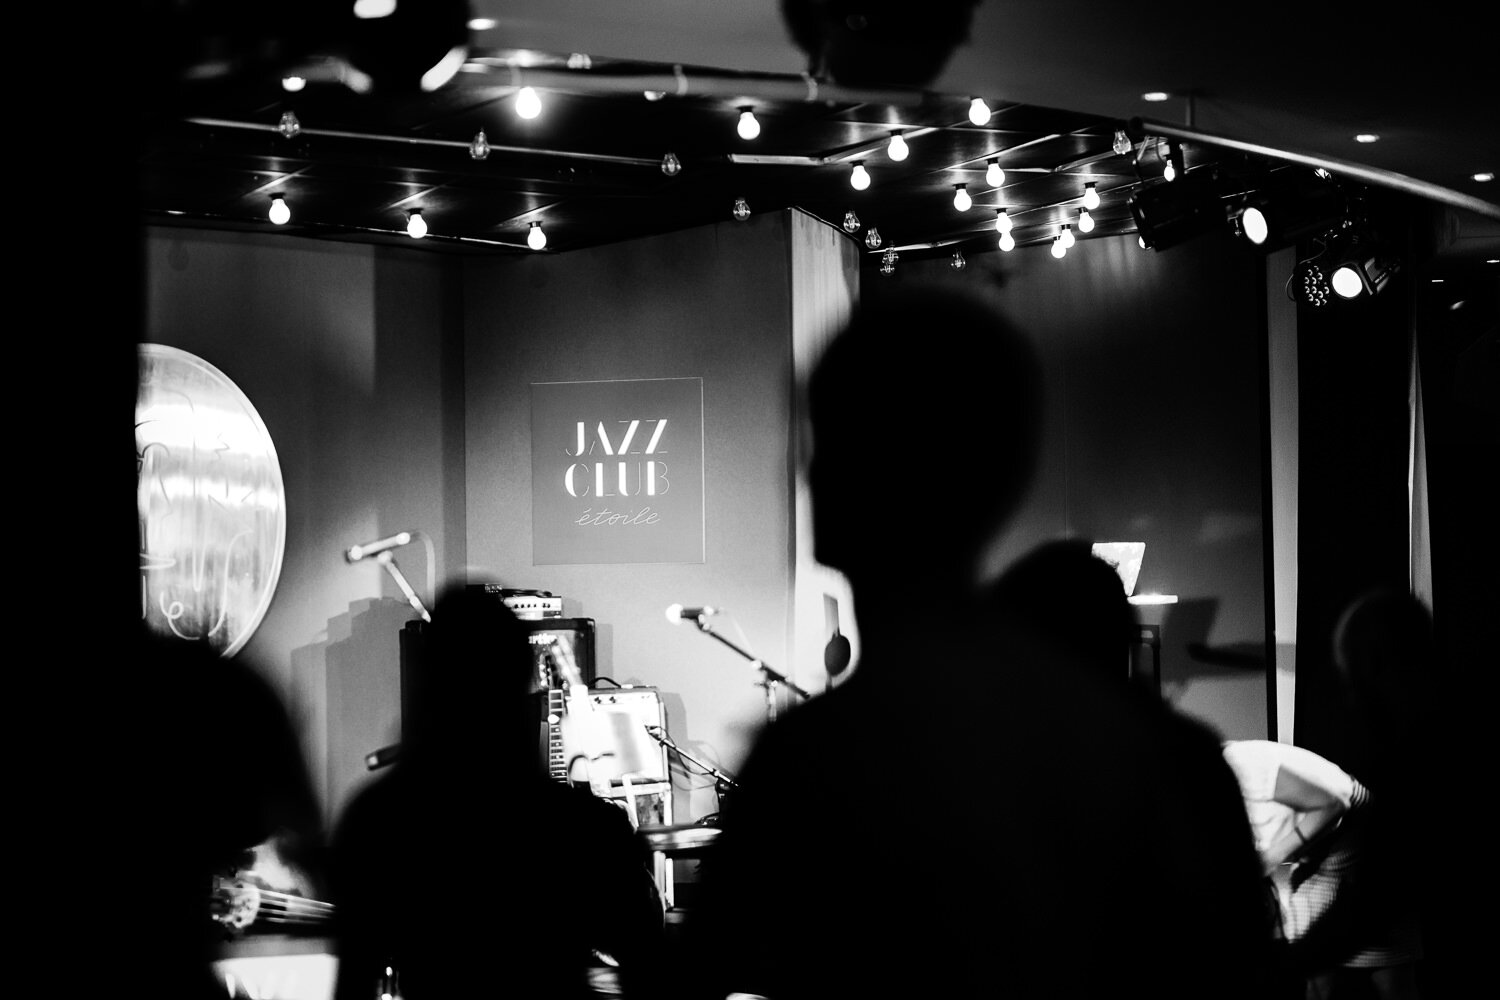  Jazz Club Night au Jazz Club Etoile - Photo: www.fb.me/photosForDancersOnly - http://www.ebobrie.com/jazz-club-night-1 